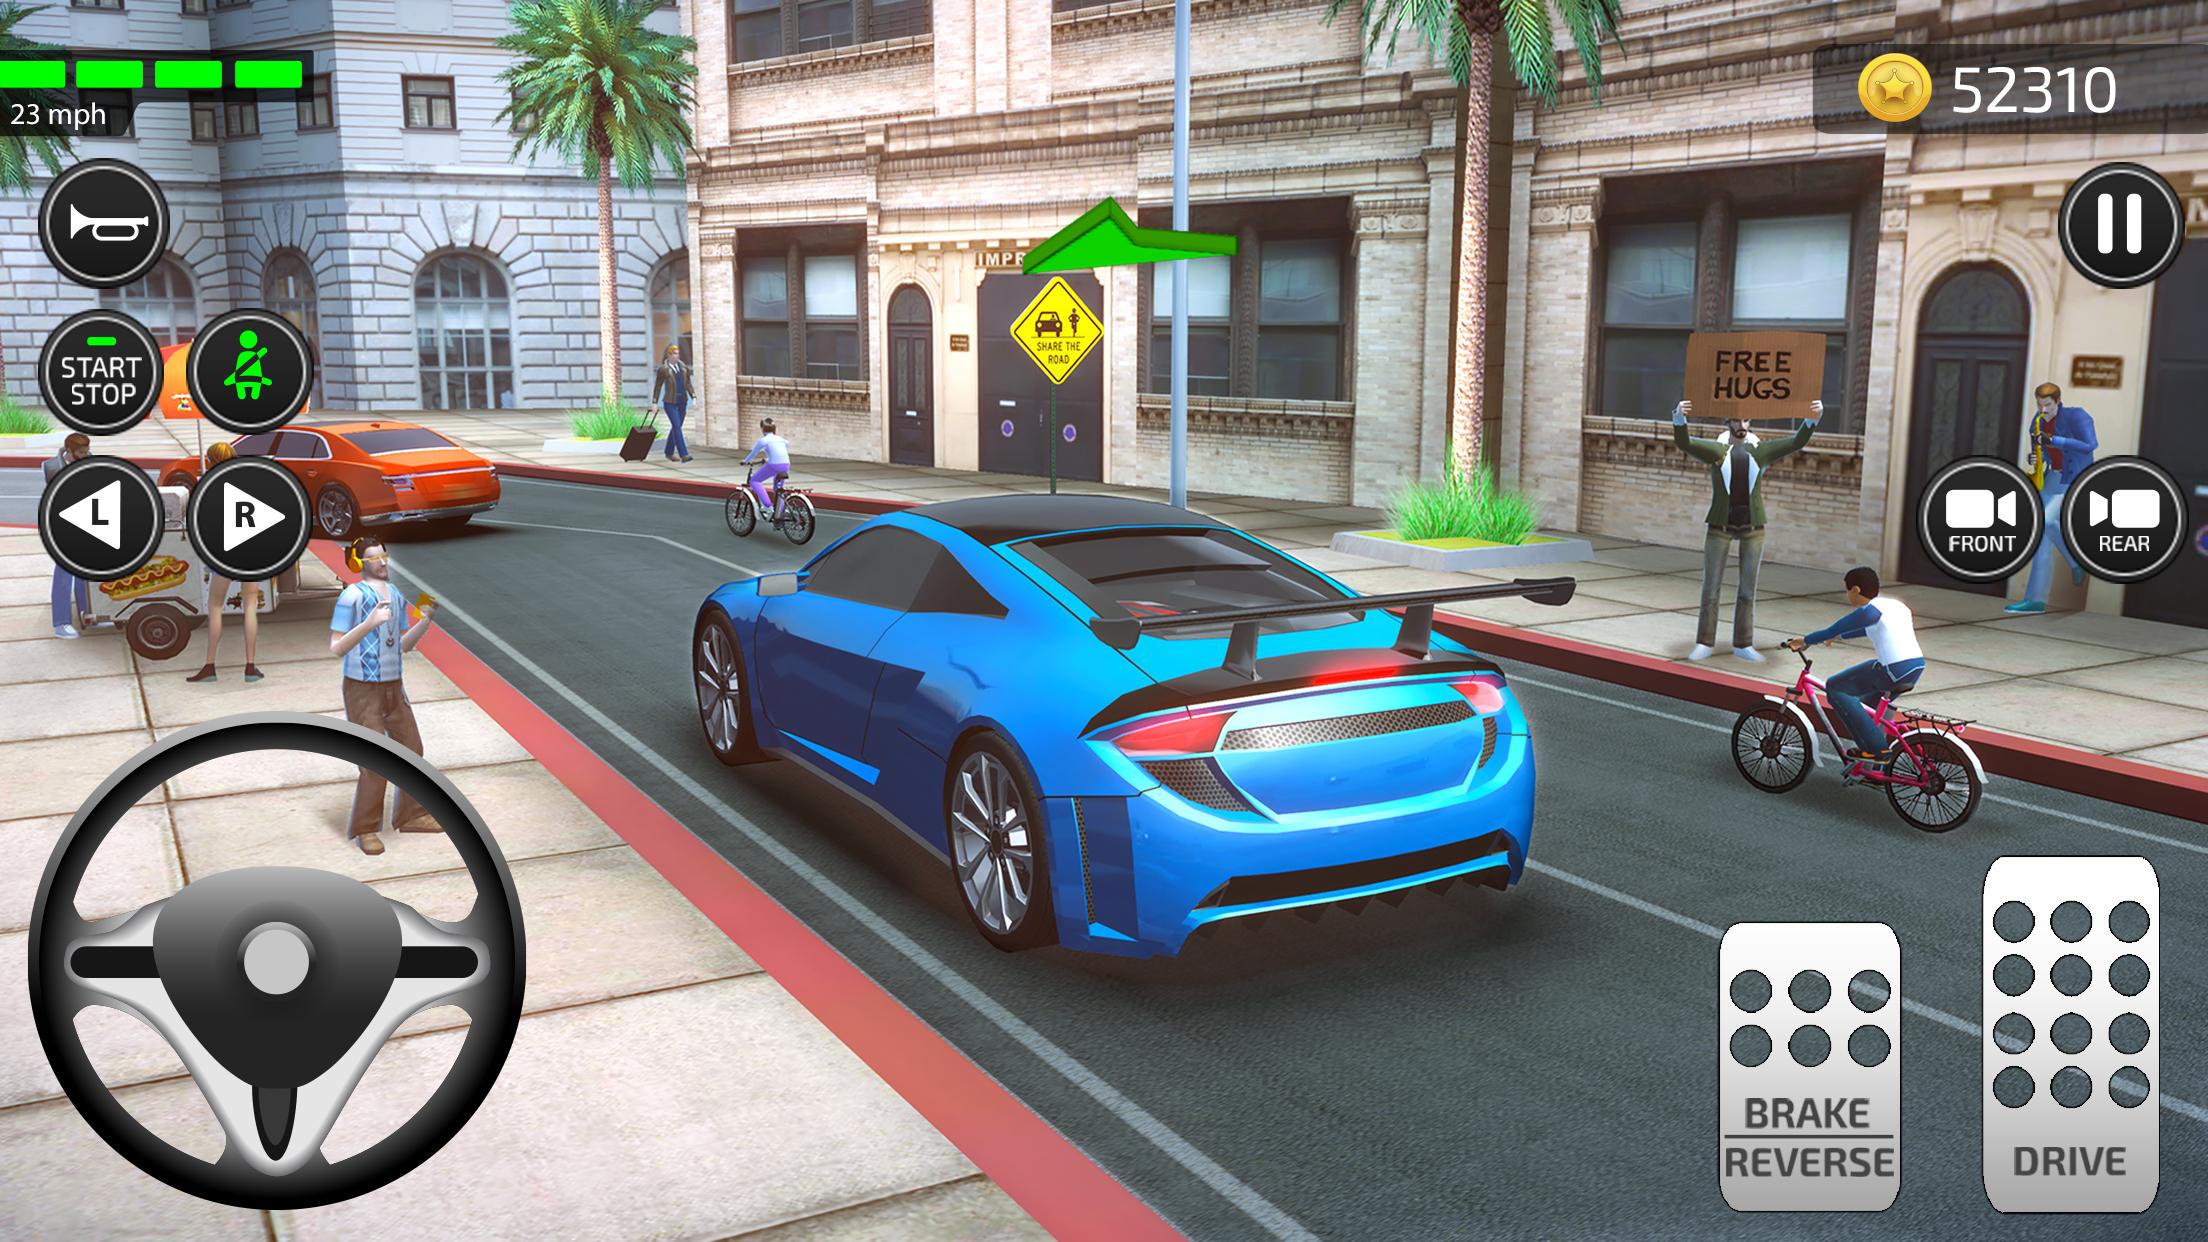 Juegos De Carros Autos Simulador De Coches 2021 For Android Apk Download Need for speed, moto gp. juegos de carros autos simulador de